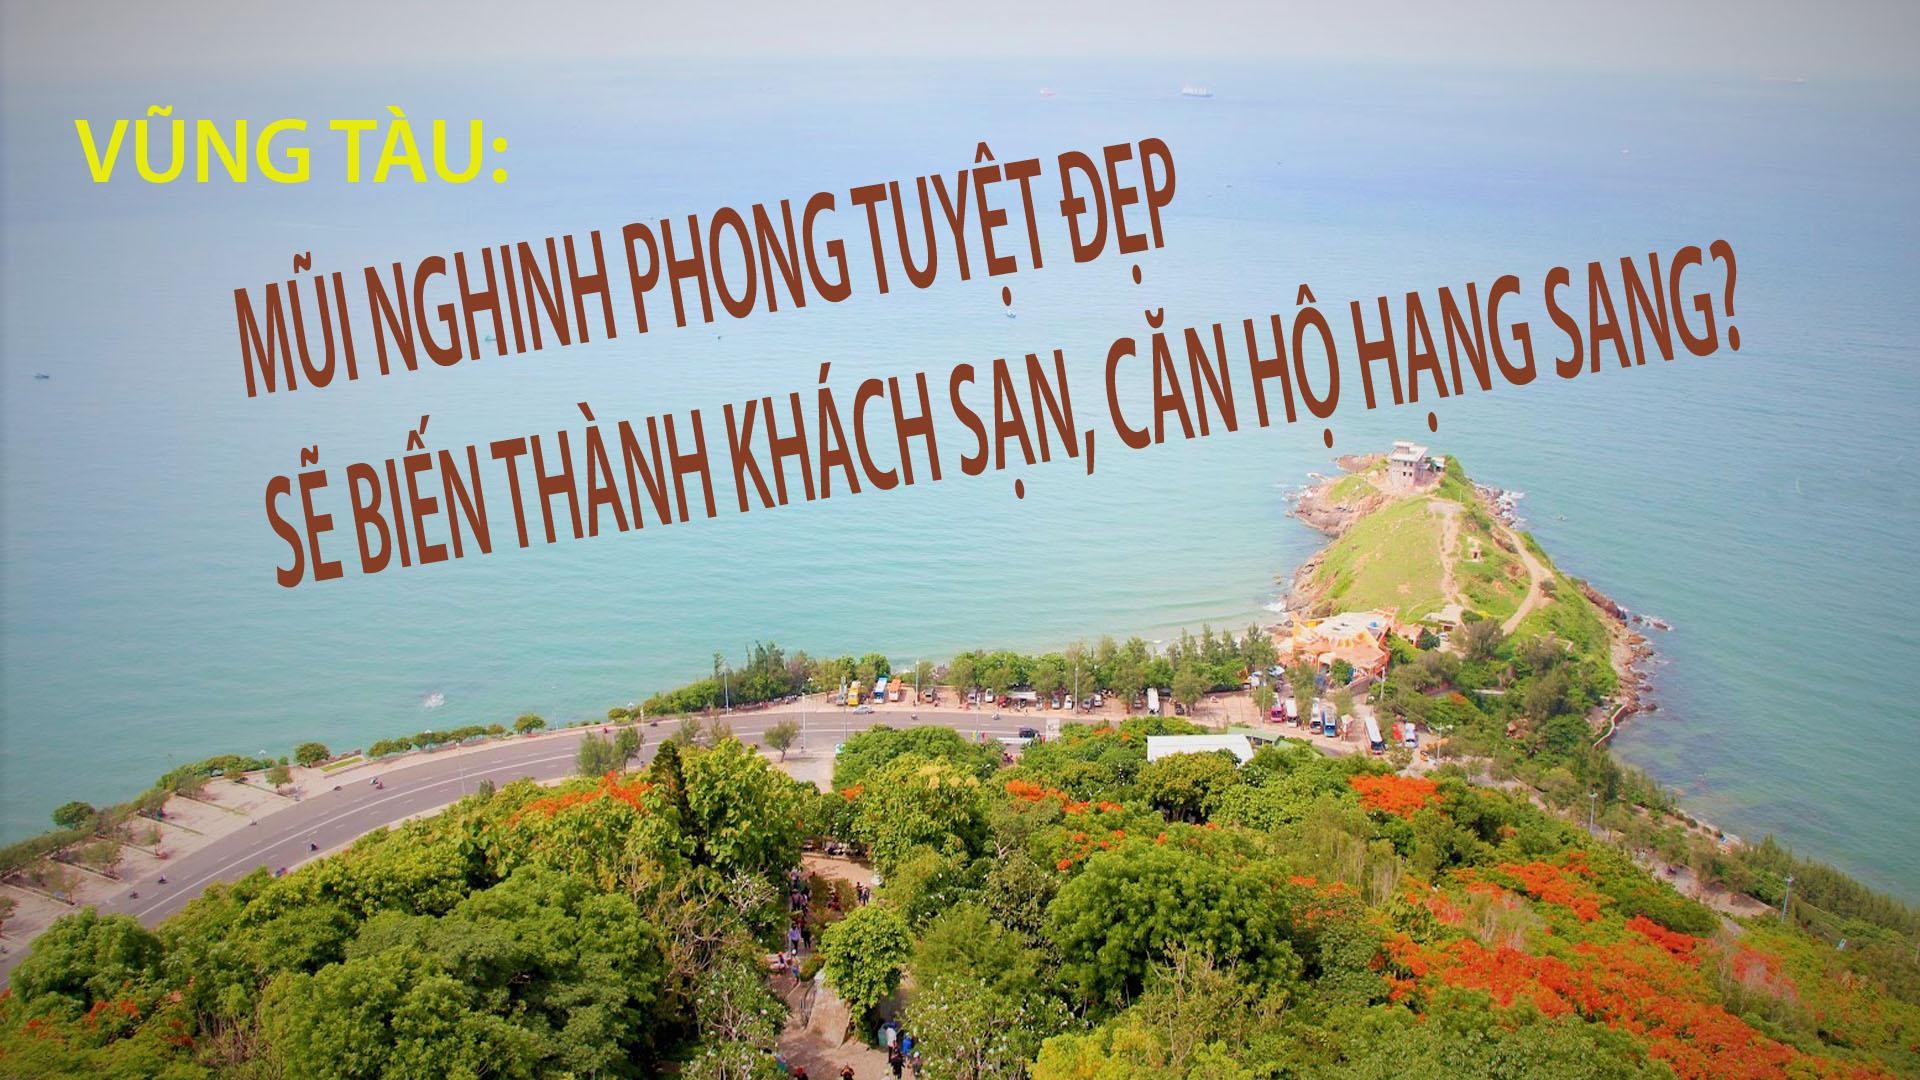 Vũng Tàu: Mũi Nghinh Phong tuyệt đẹp sẽ biến thành khách sạn, căn hộ hạng sang? 